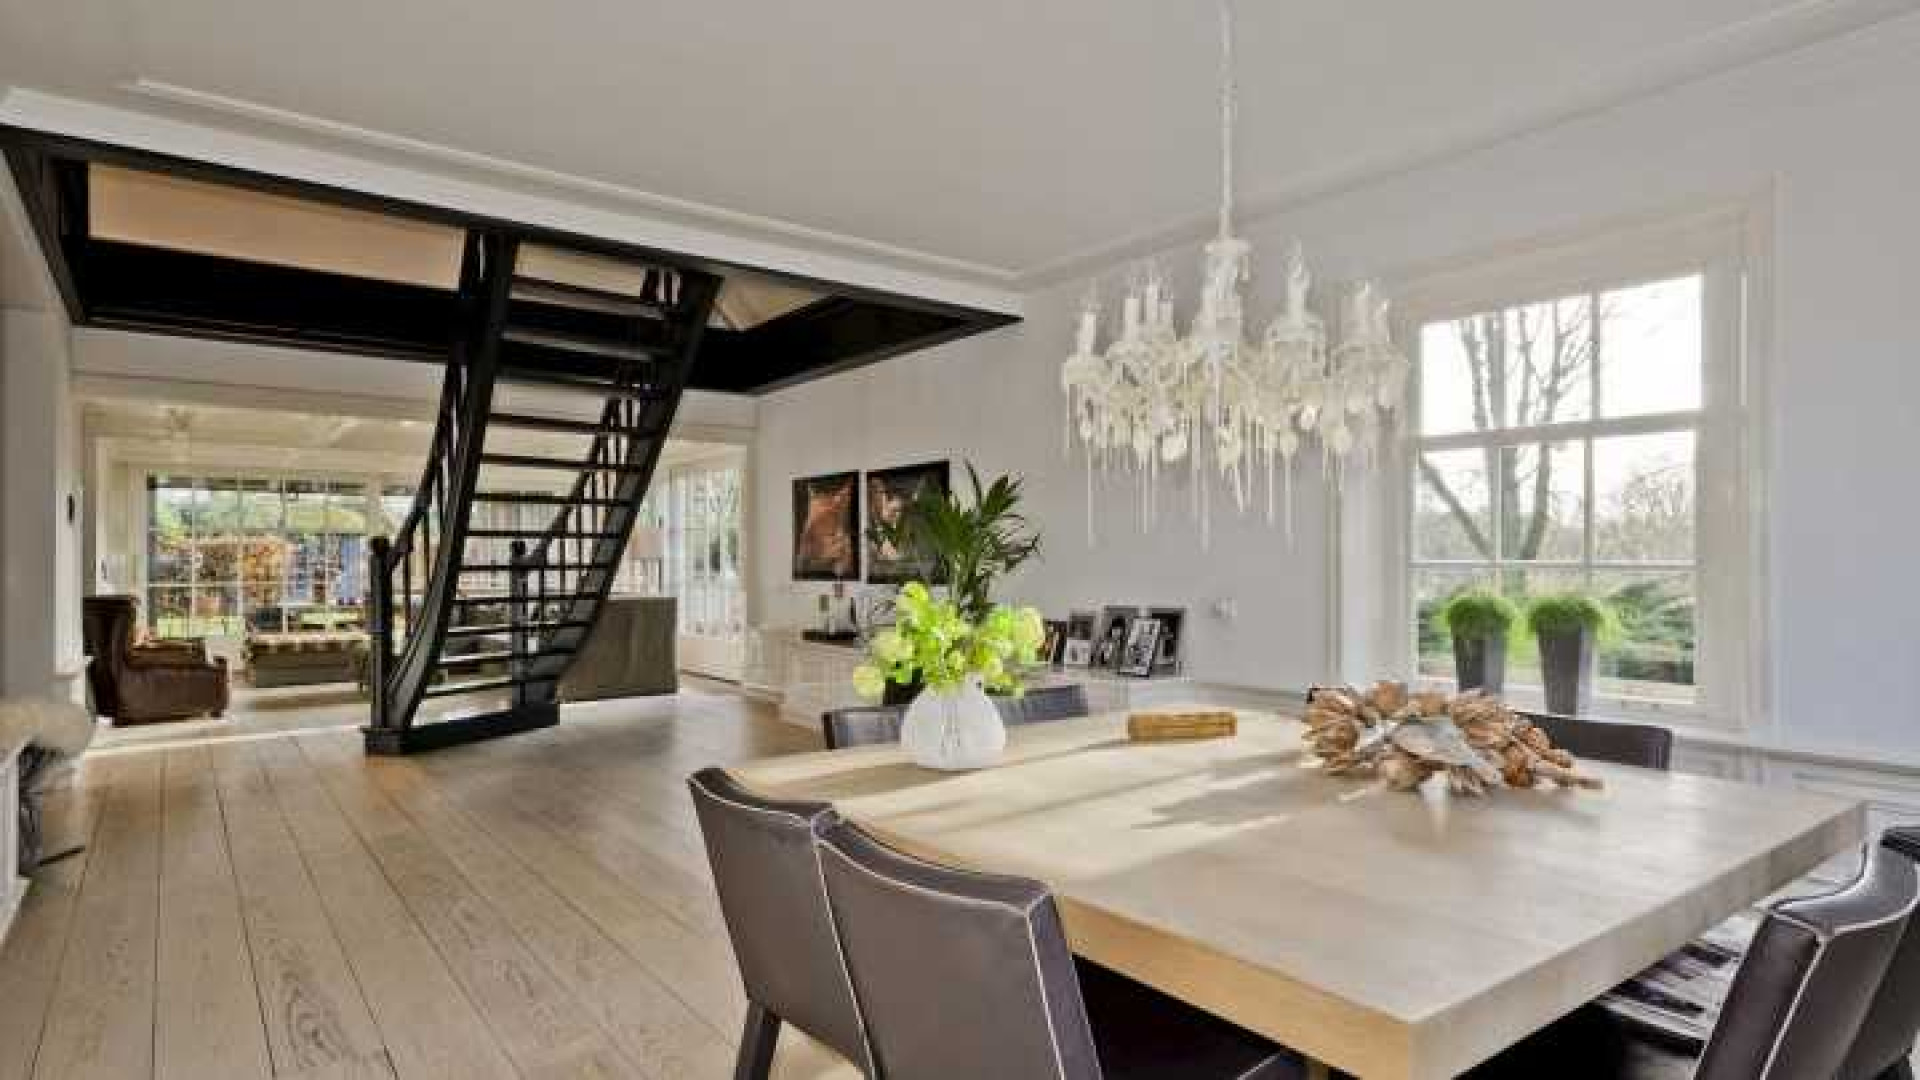 Binnenkijken in het totaal door ontwerper Piet Boon gerestylde huis van Henny Huisman. Zie foto's 9